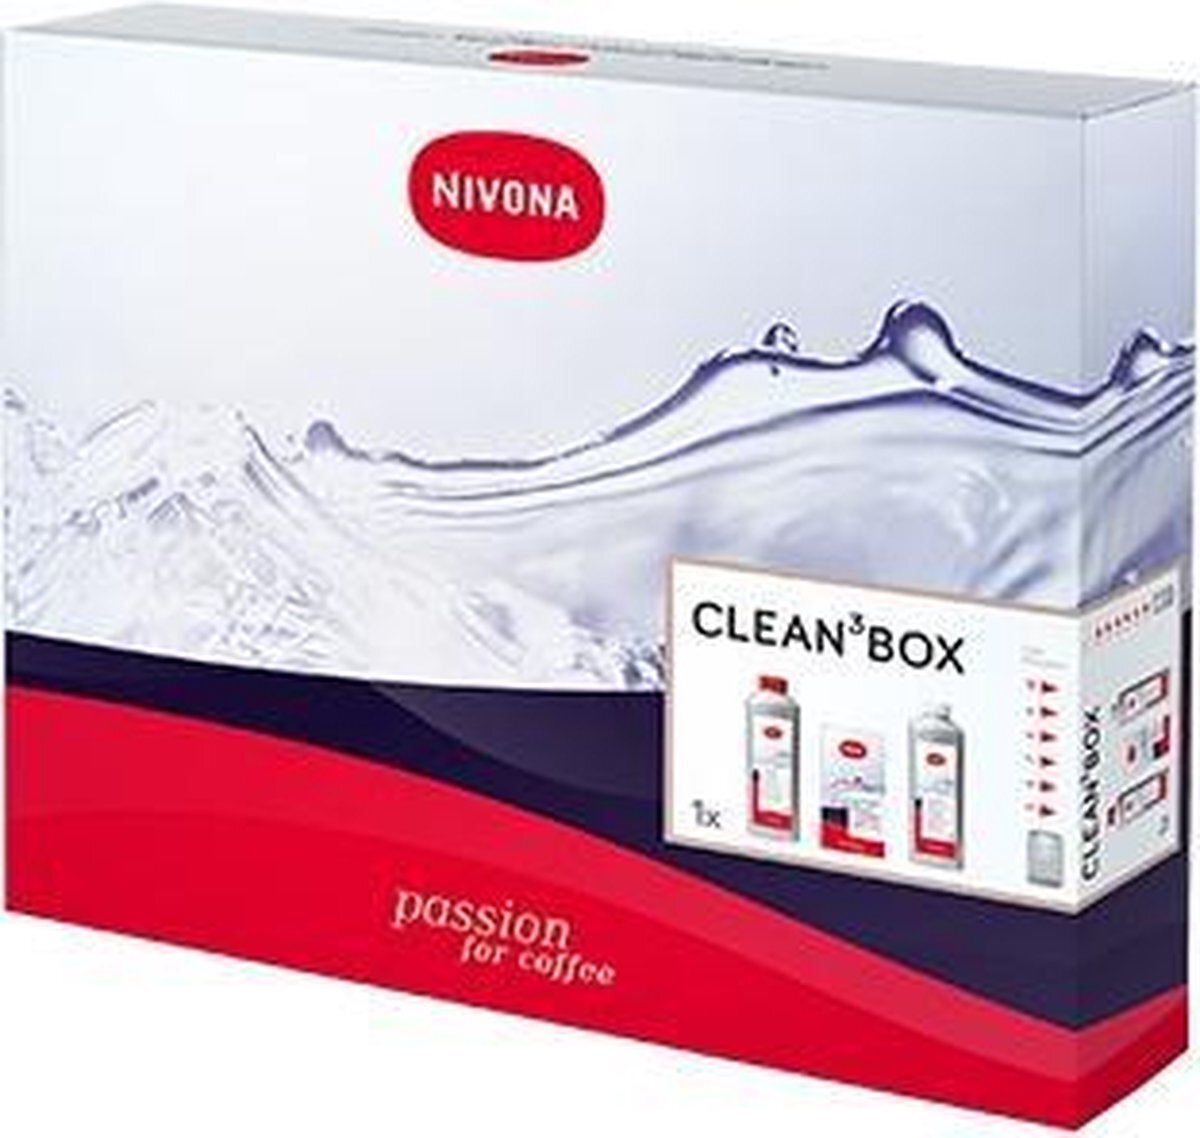 Nivona Cleanbox